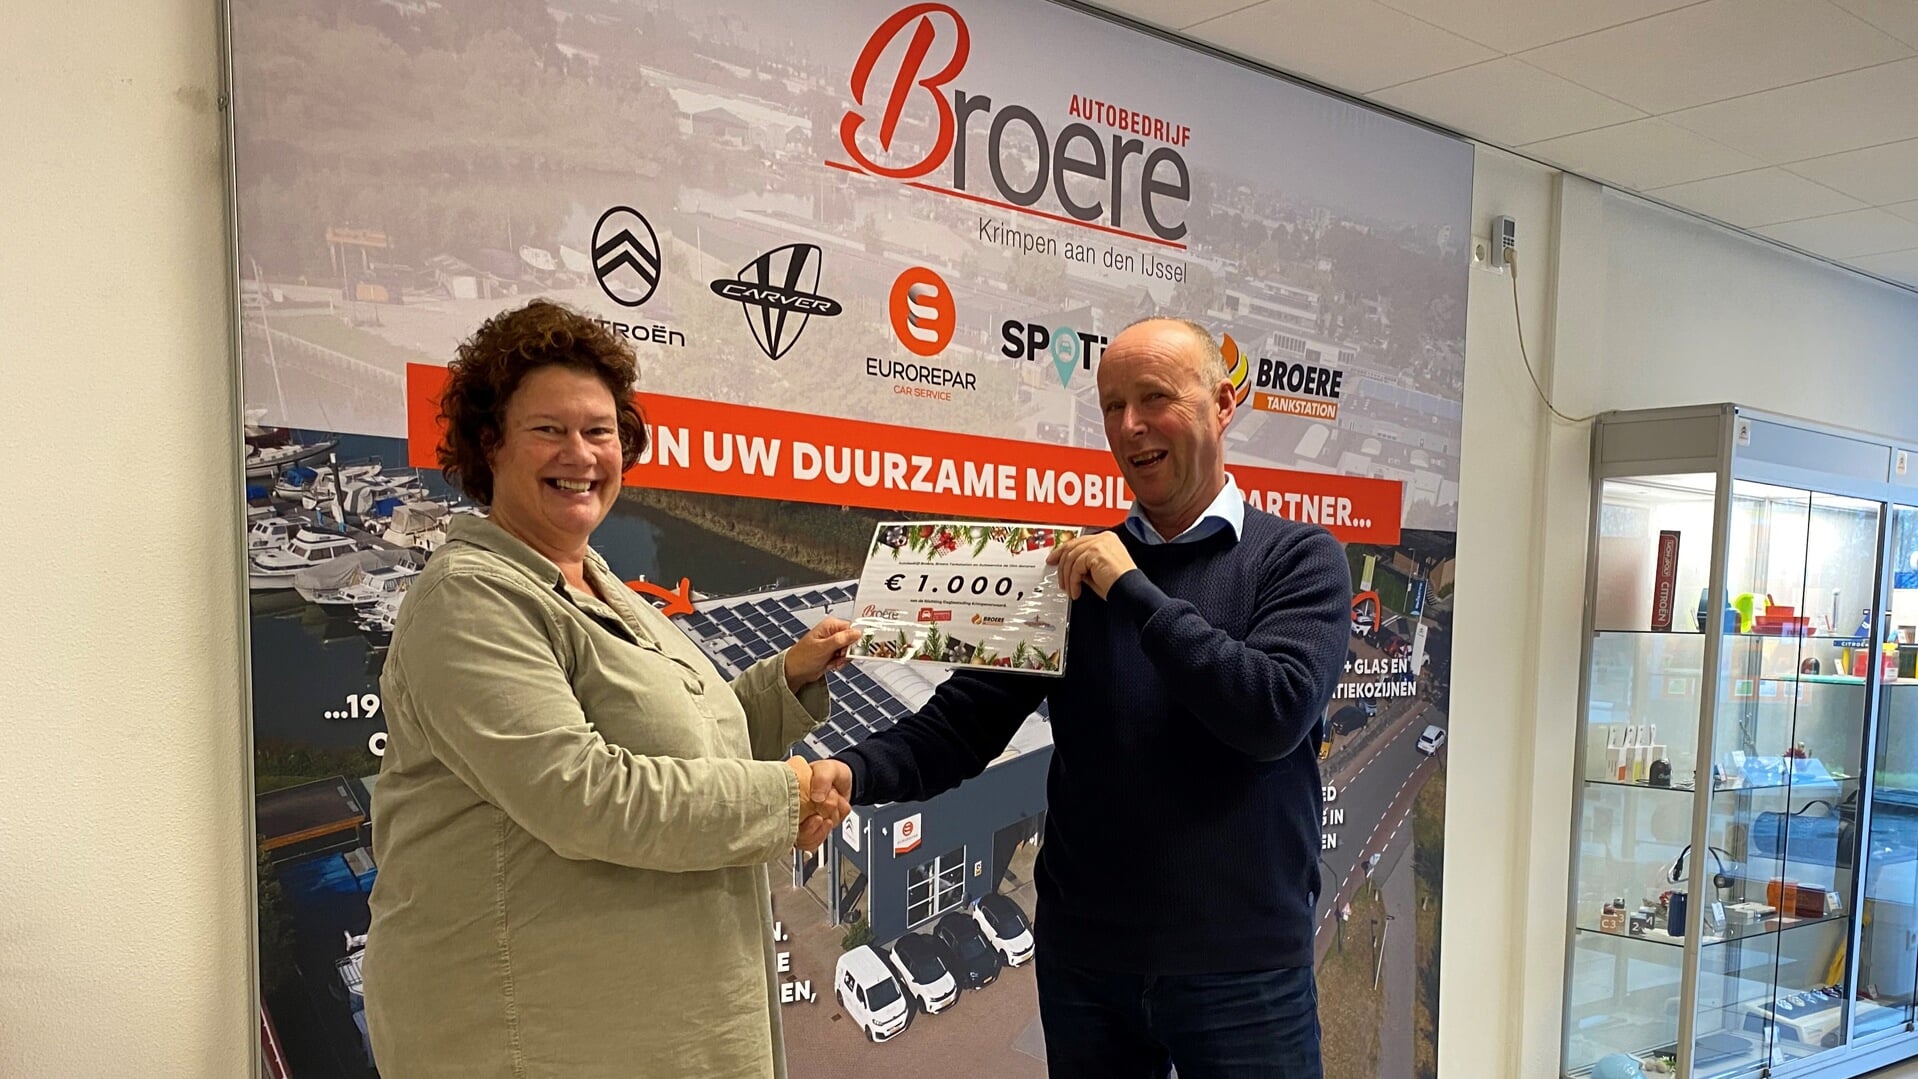 • Piet Broere overhandigt de cheque aan Arjenne Timmer.